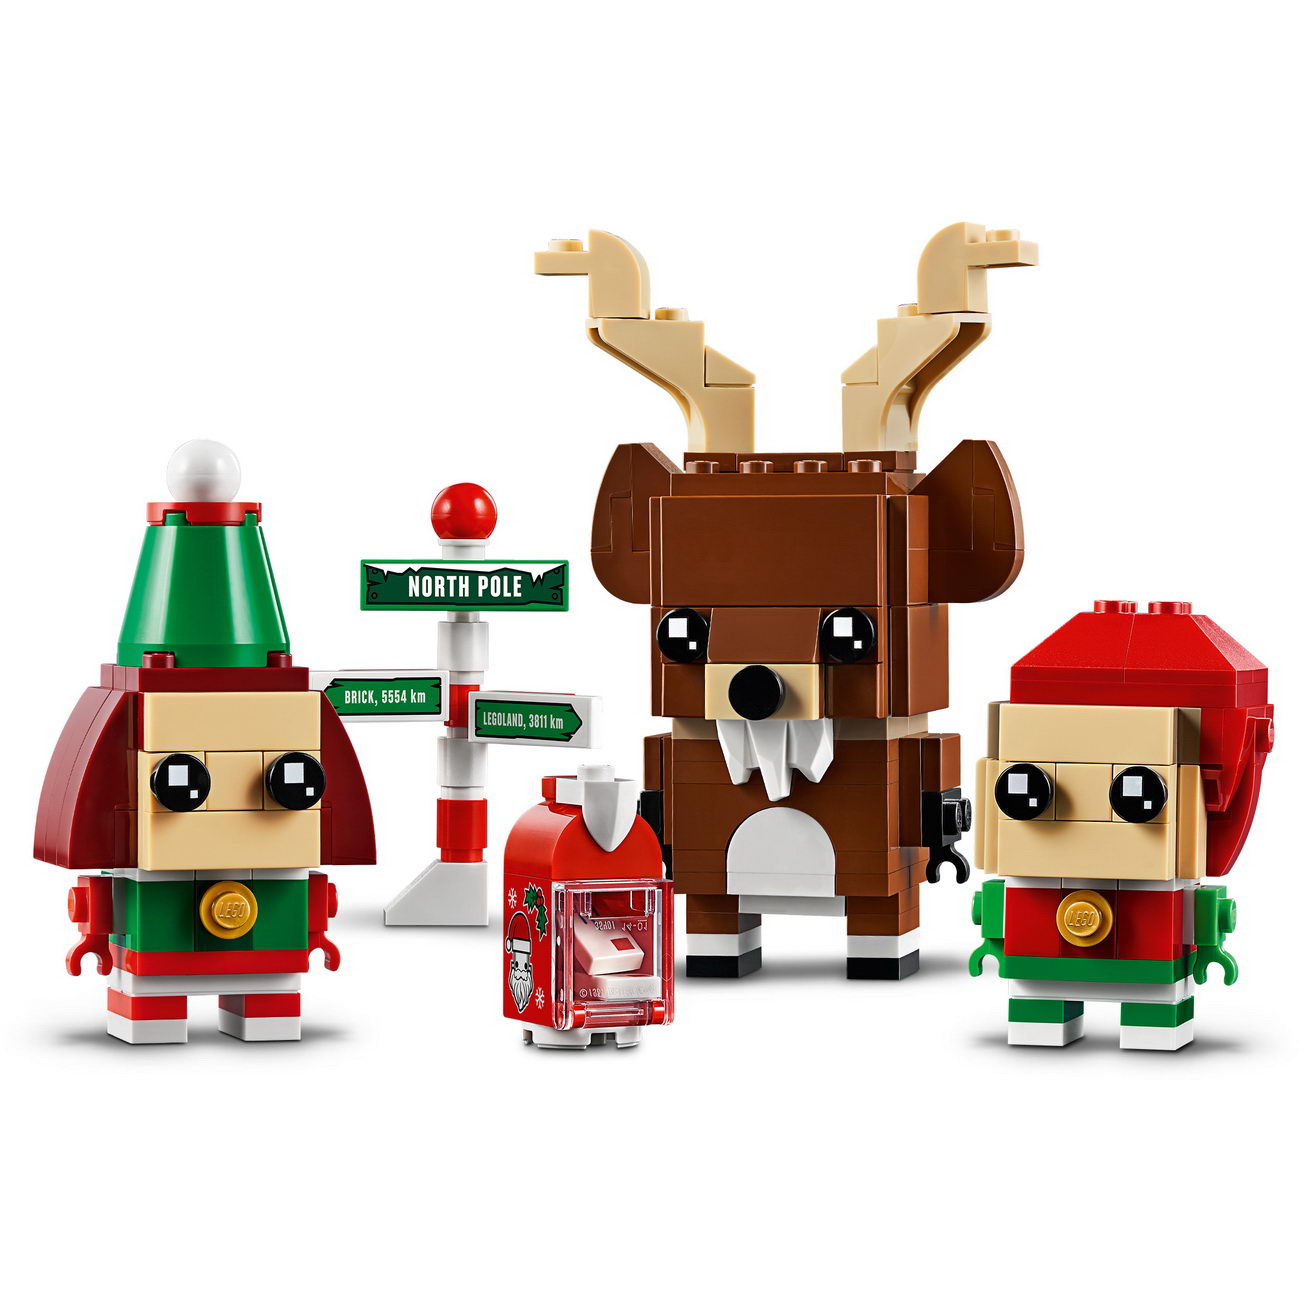 LEGO BrickHeadz 40353 - Rentier und Elfen